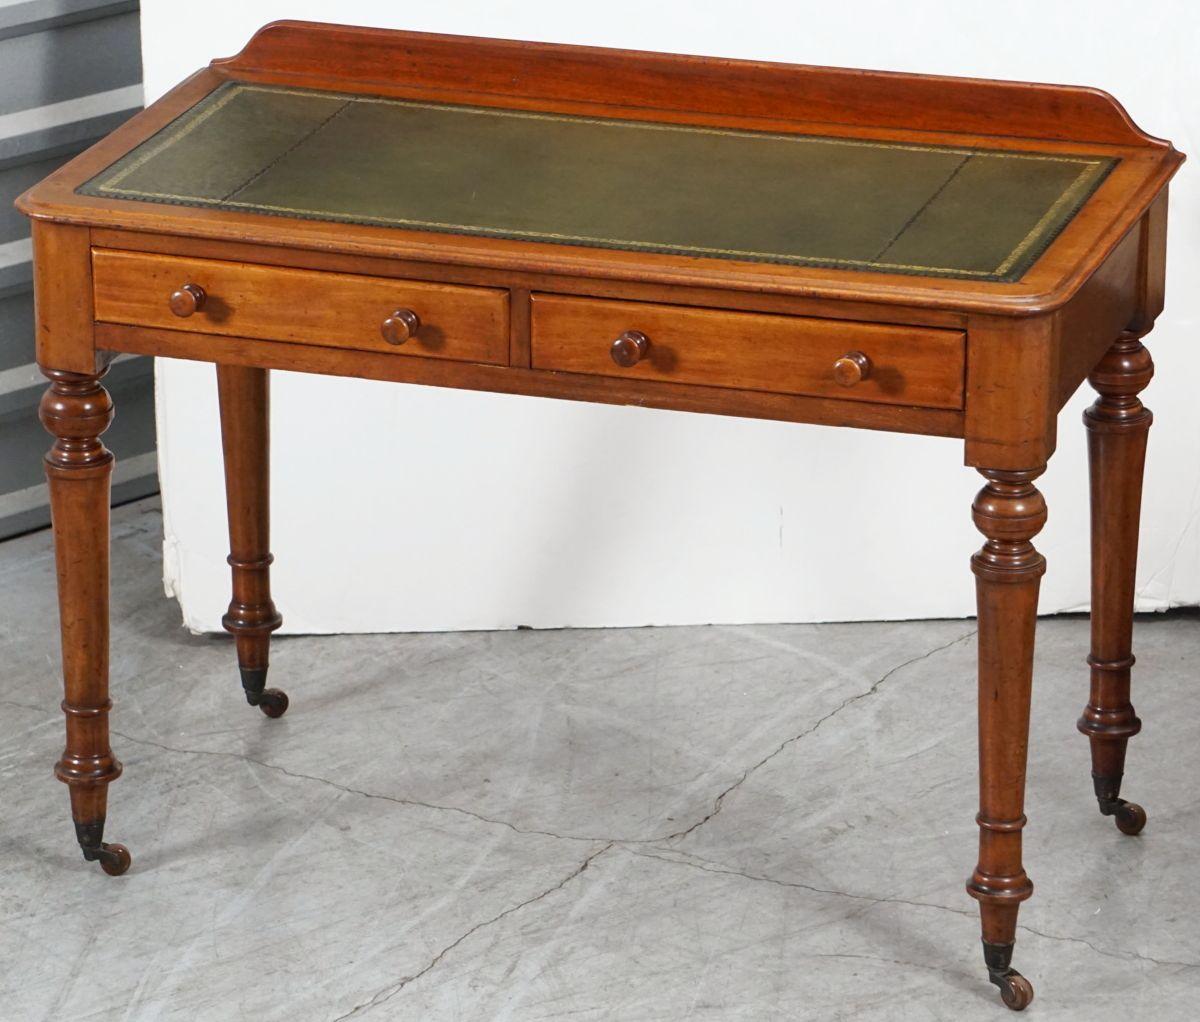 Une belle table à écrire ou bureau anglais en acajou du 19ème siècle, avec un plateau en cuir gaufré avec des bords dorés, avec un dossier en forme de galerie, au-dessus d'une frise de deux tiroirs ajustés - chacun avec deux poignées tournées, et